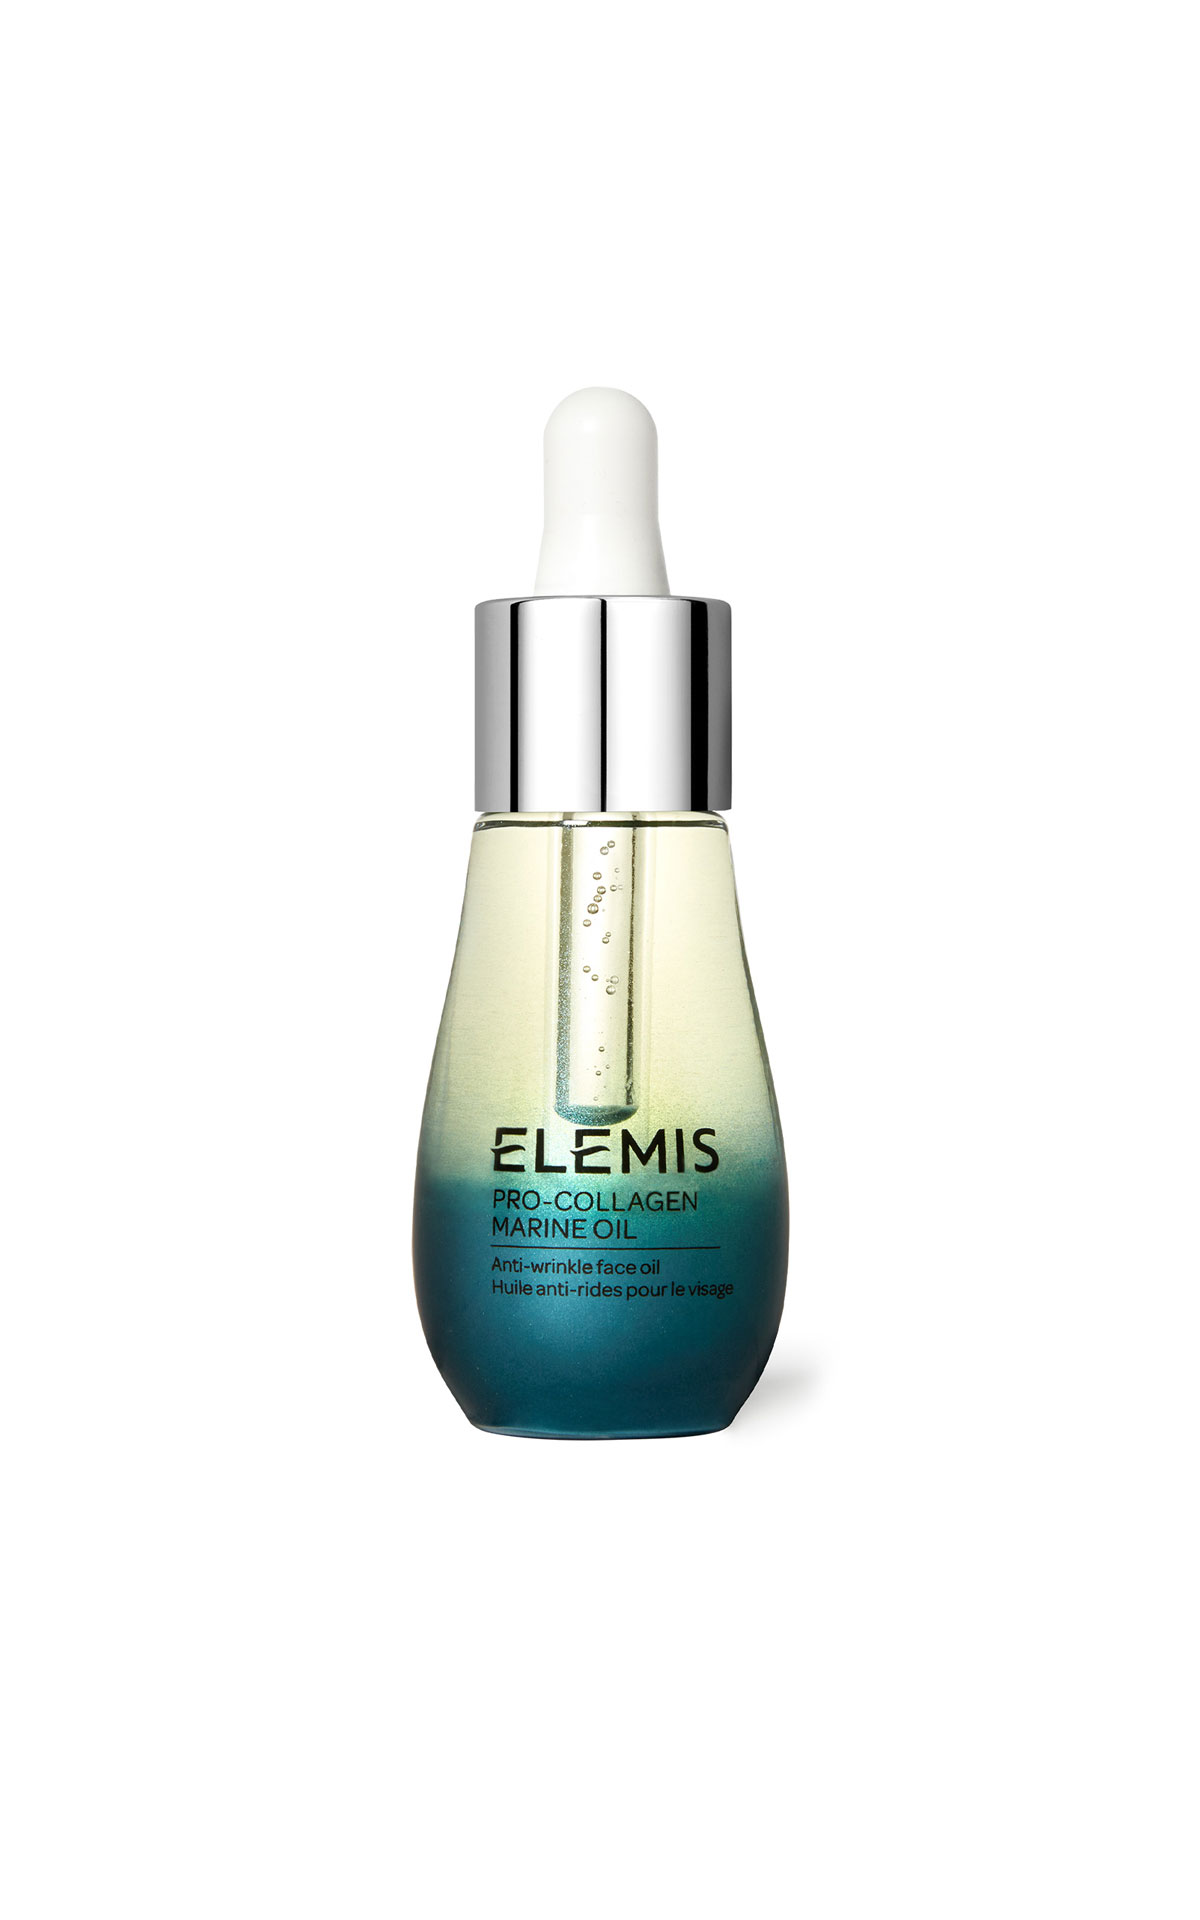 ELEMIS Pro-collagen marine oil 15ml from Bicester Village